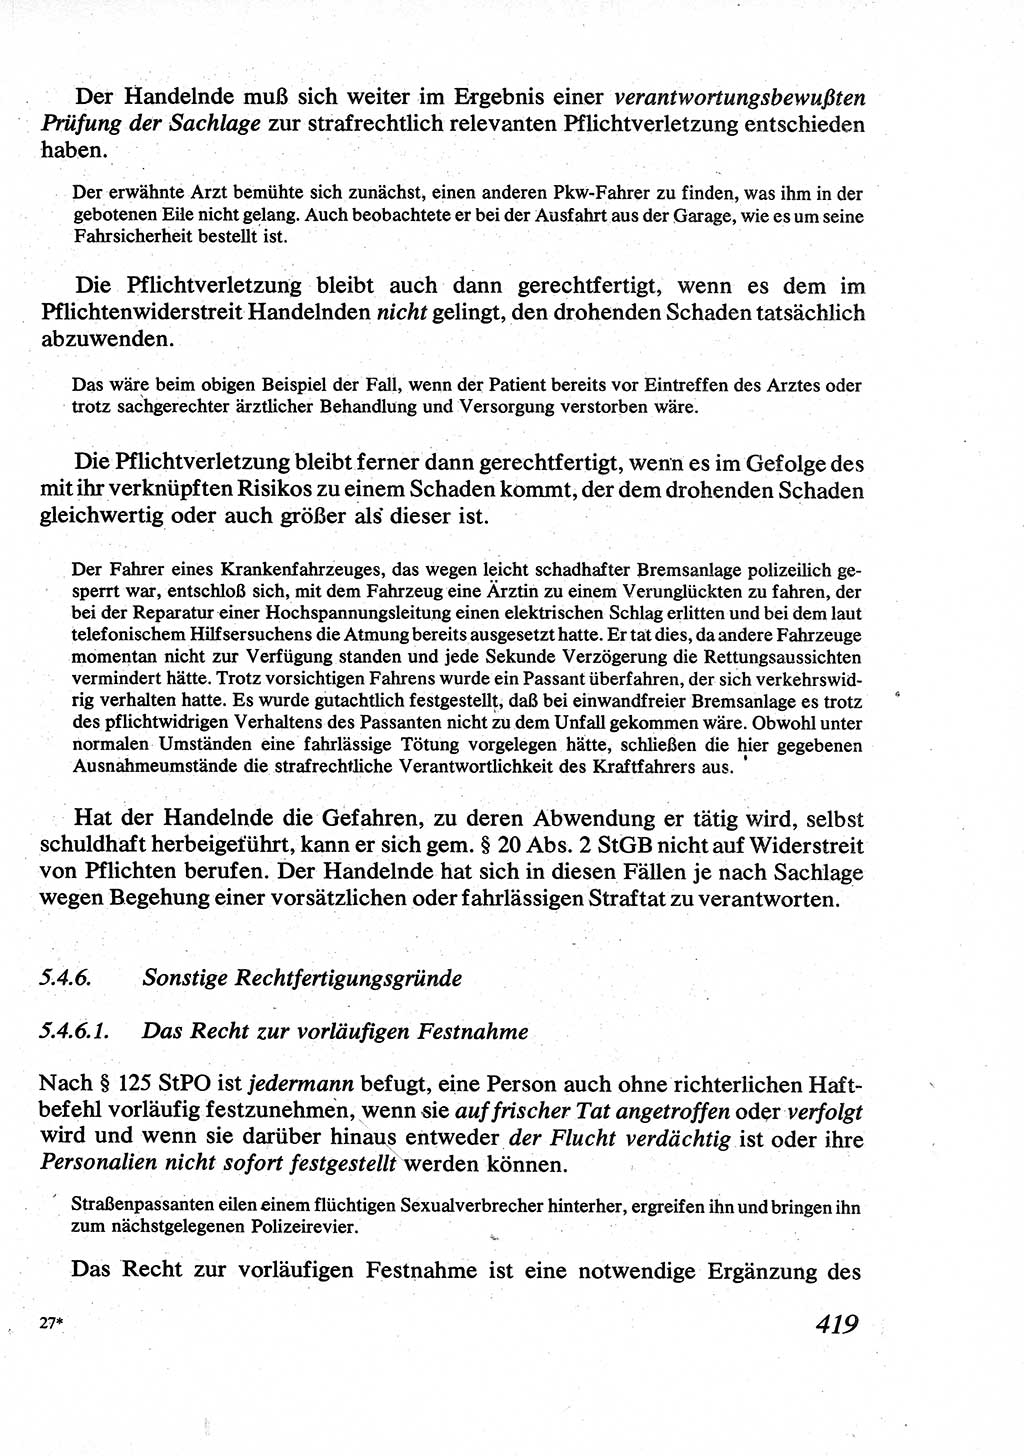 Strafrecht [Deutsche Demokratische Republik (DDR)], Allgemeiner Teil, Lehrbuch 1976, Seite 419 (Strafr. DDR AT Lb. 1976, S. 419)